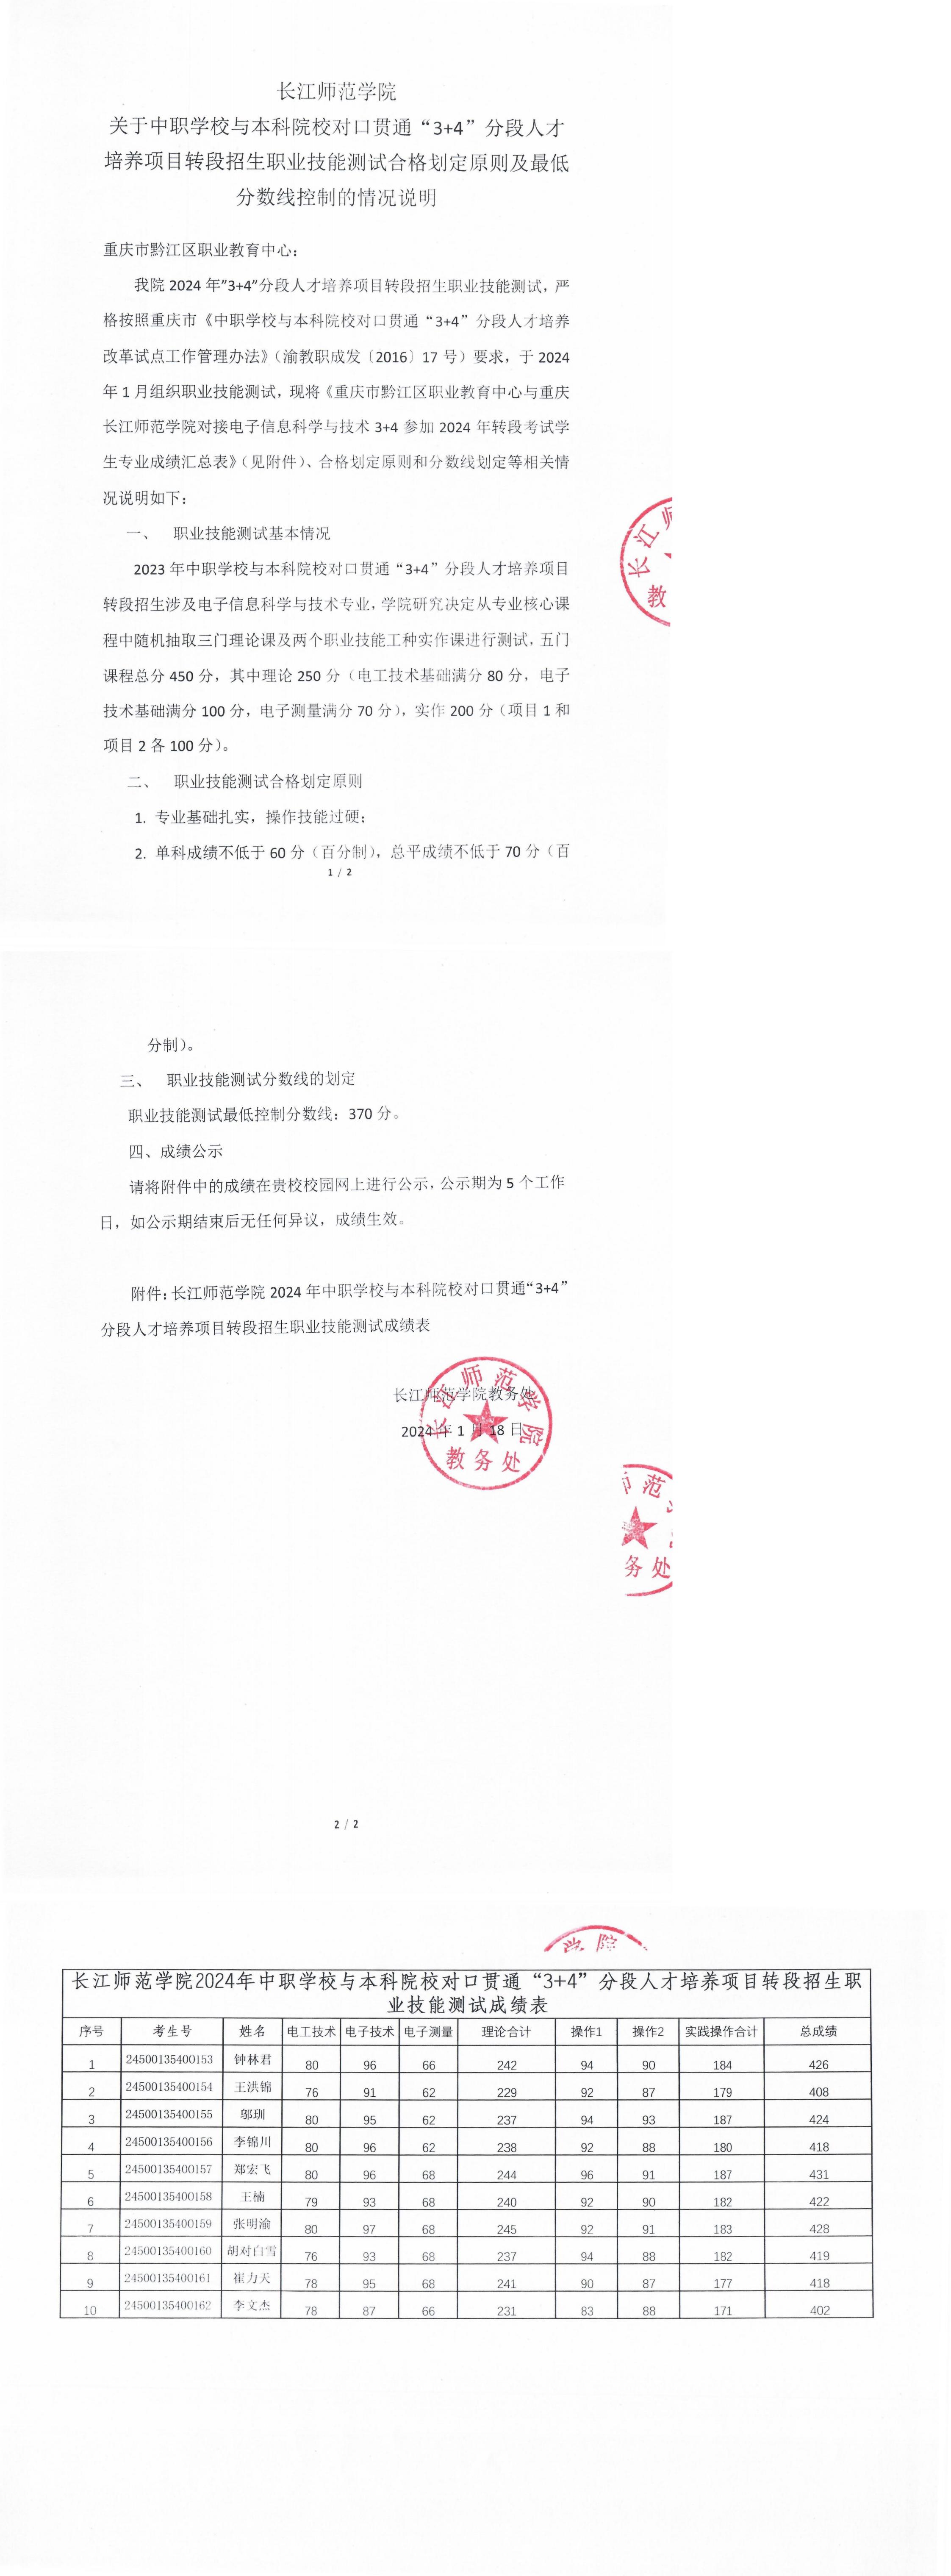 黔江职教中心3+4转段分数线控制说明及成绩表_00.jpg